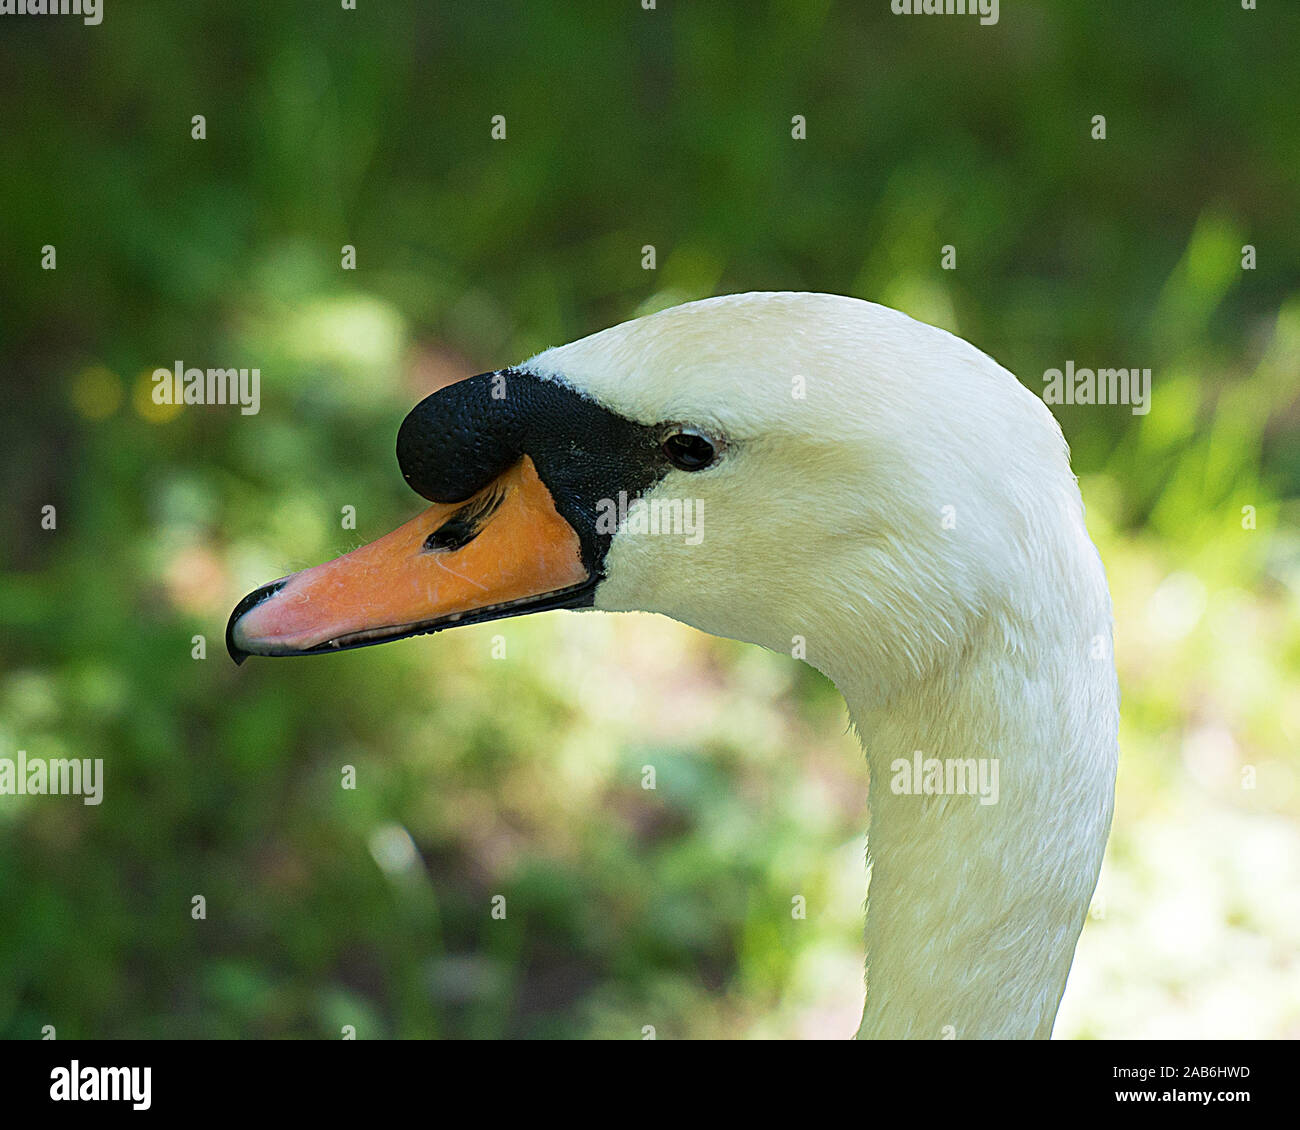 White Swan bird Blick auf seinen Kopf, Schnabel, Auge, mit einem Bokeh Hintergrund Stockfoto